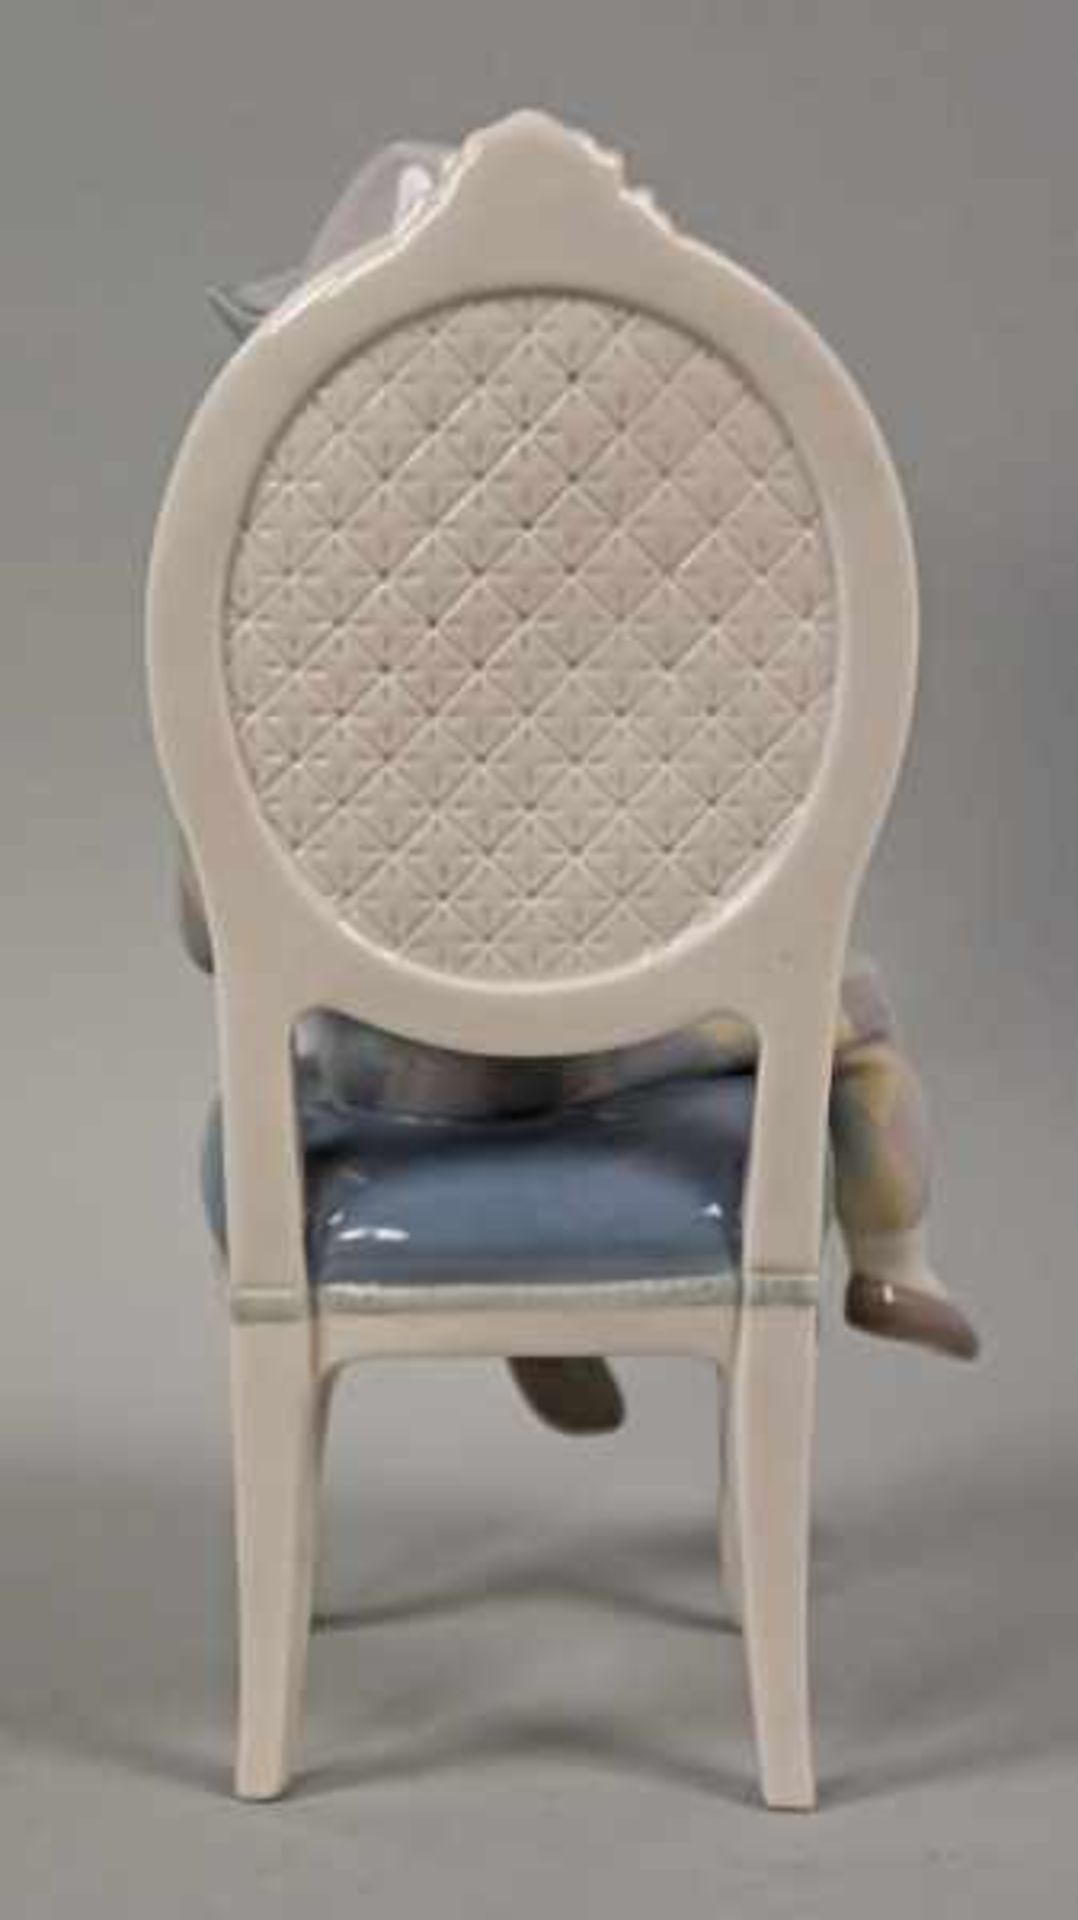 HARLEKIN mit breitem weißen Kragen, auf Stuhl sitzend, auf dem Schoß eine weiße Katze mit - Bild 5 aus 9